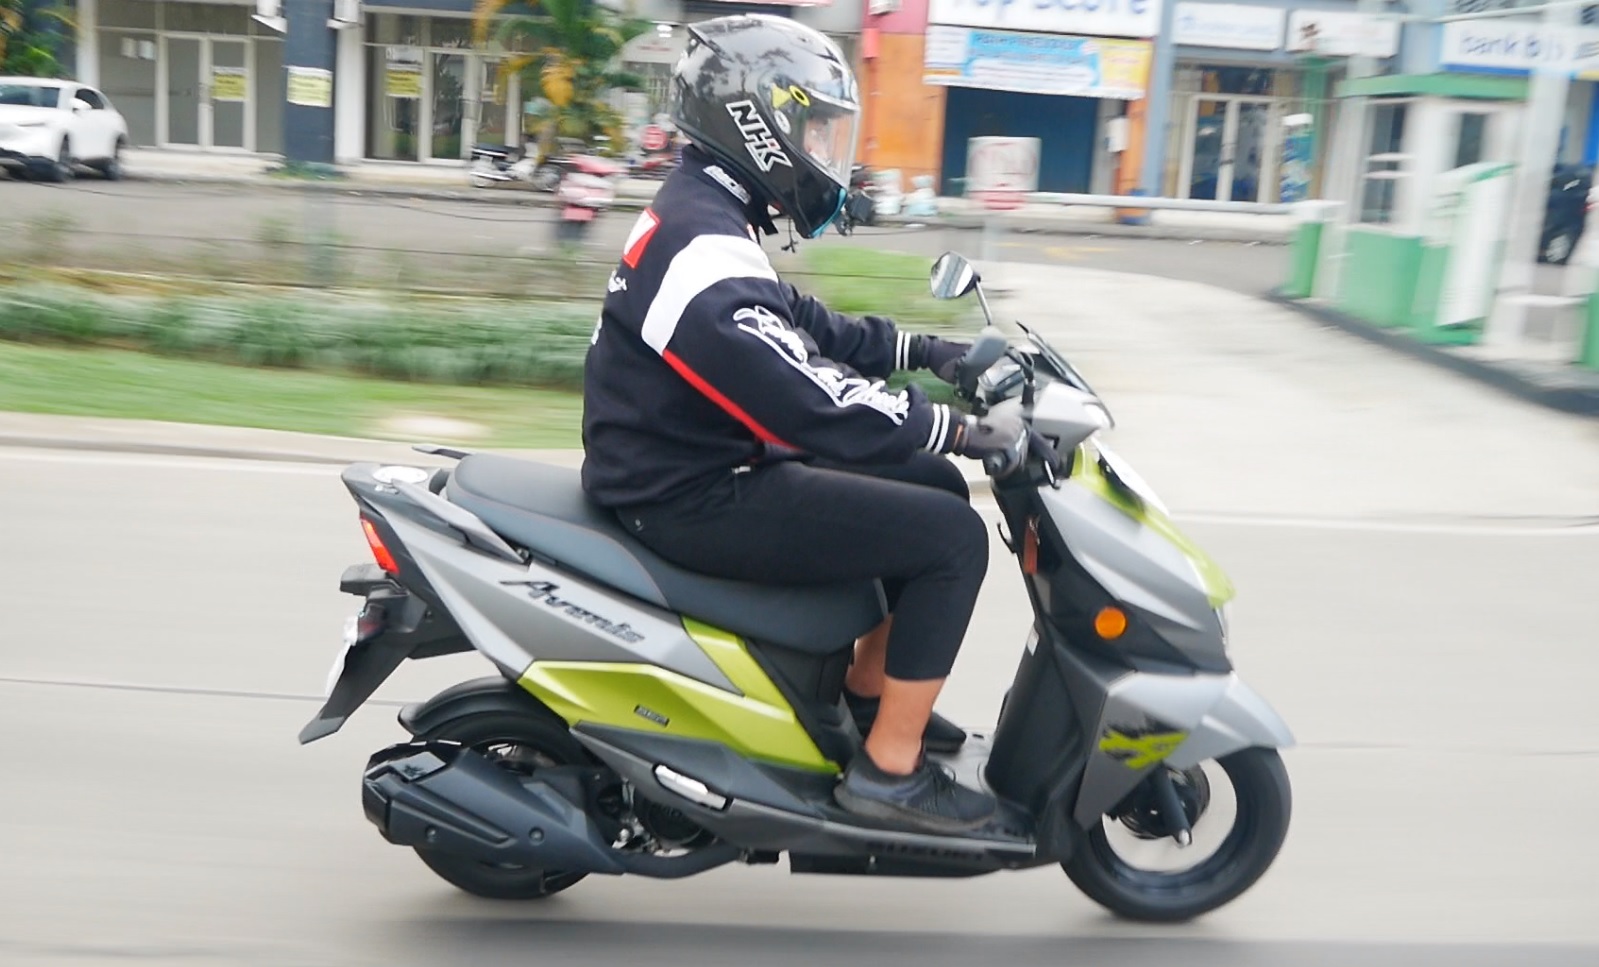 Test Ride Suzuki Avenis 125: Nggak Jomplang Tuh, Skutik 125 Ini Cocok Banget untuk Perkotaan!